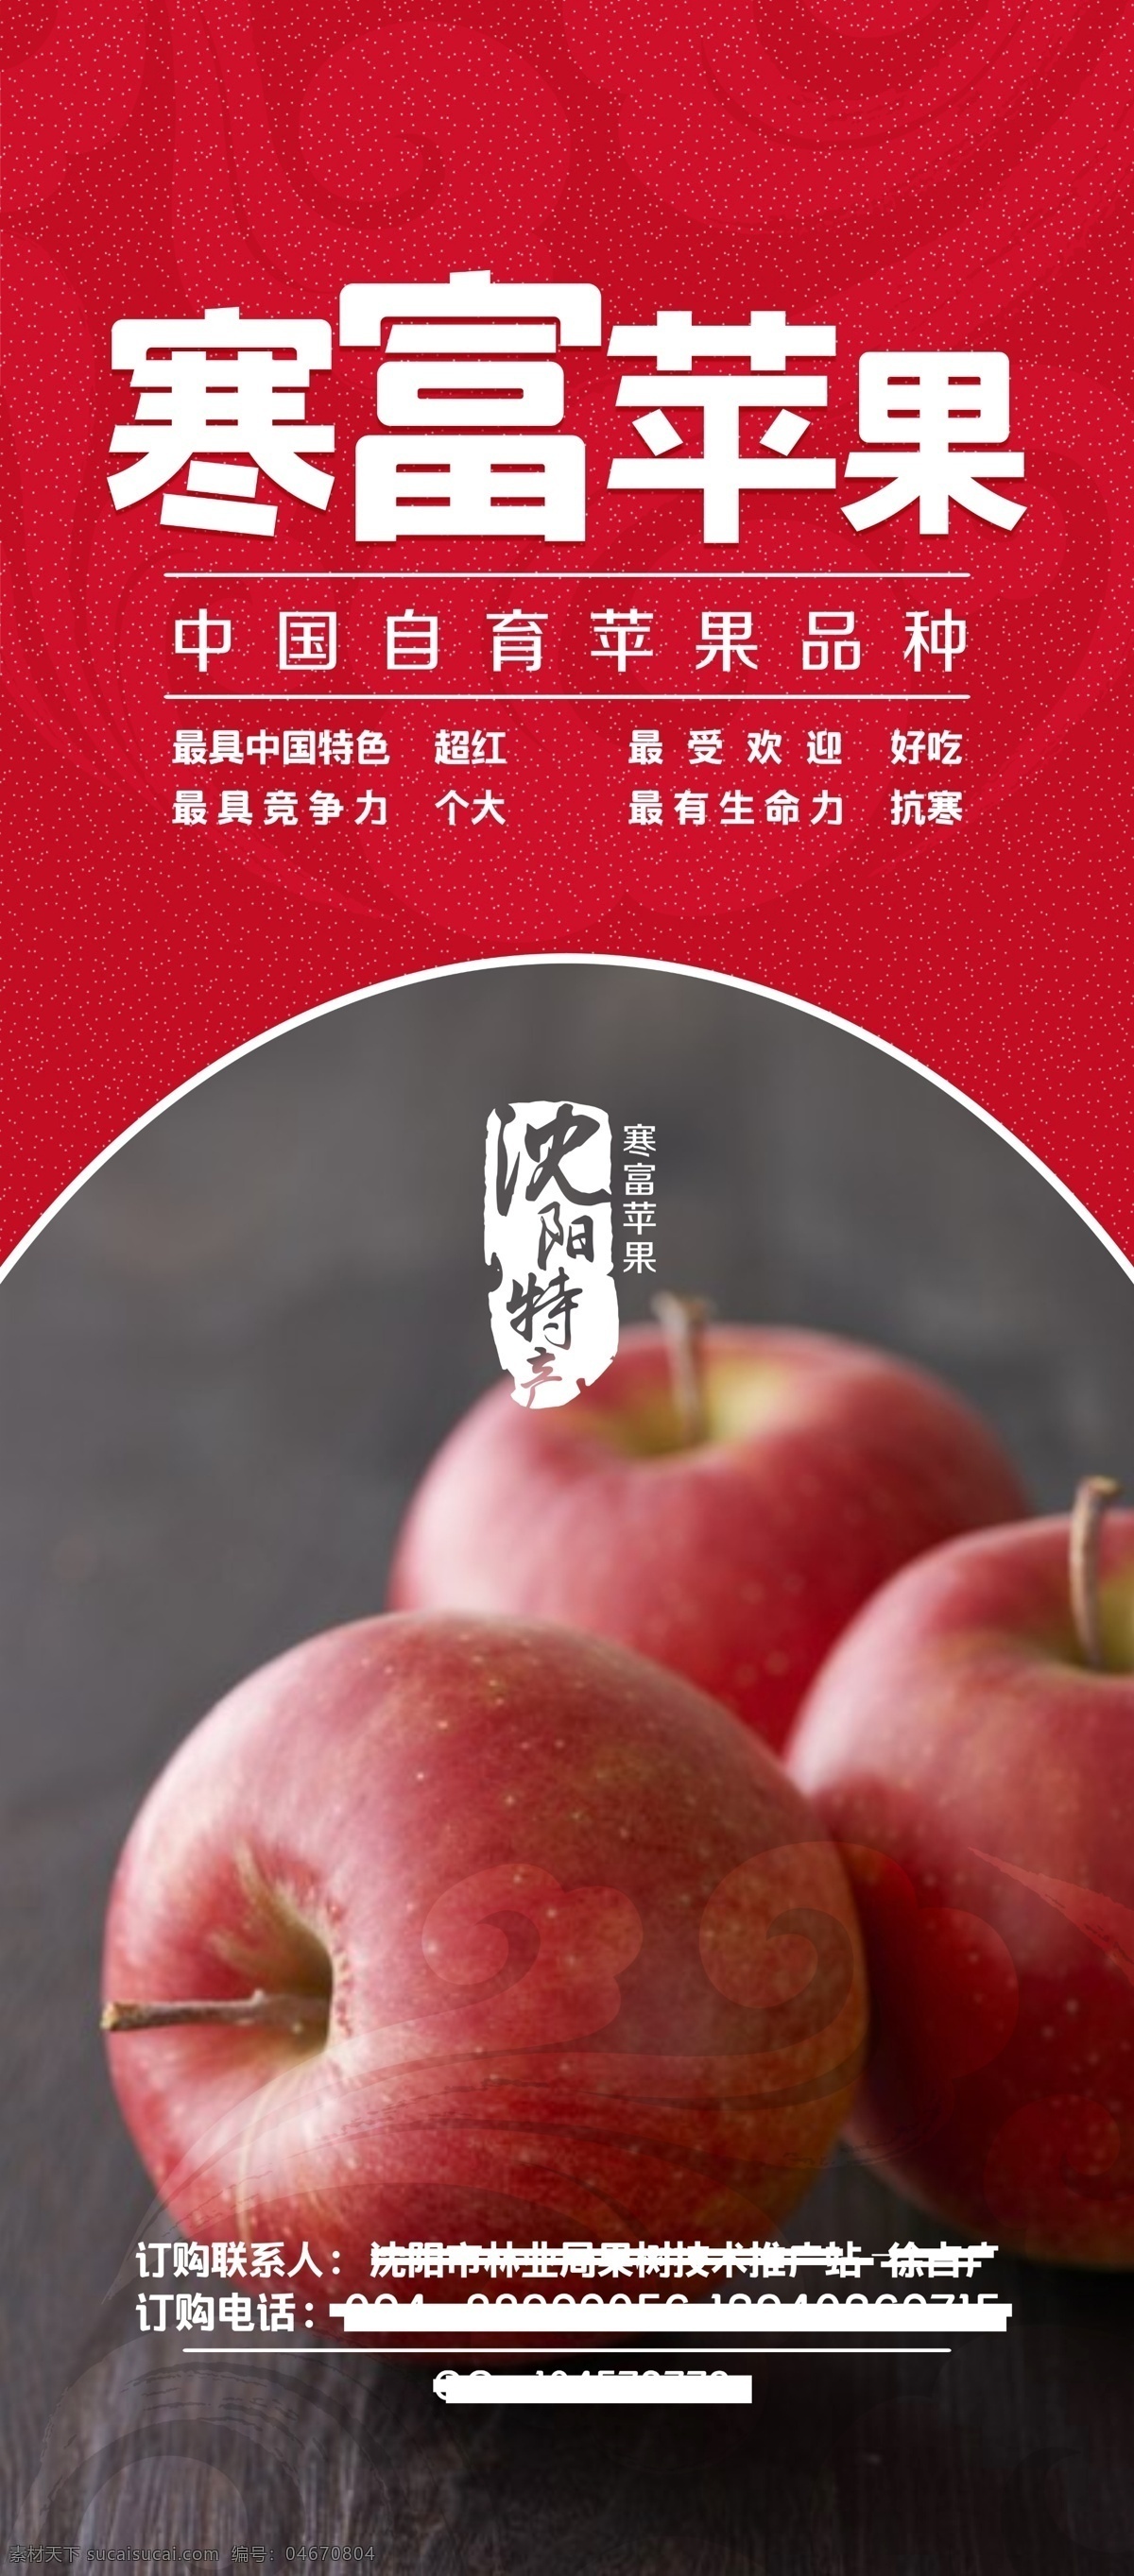 苹果展架 苹果 团购会 红苹果 富士苹果 展架 红色